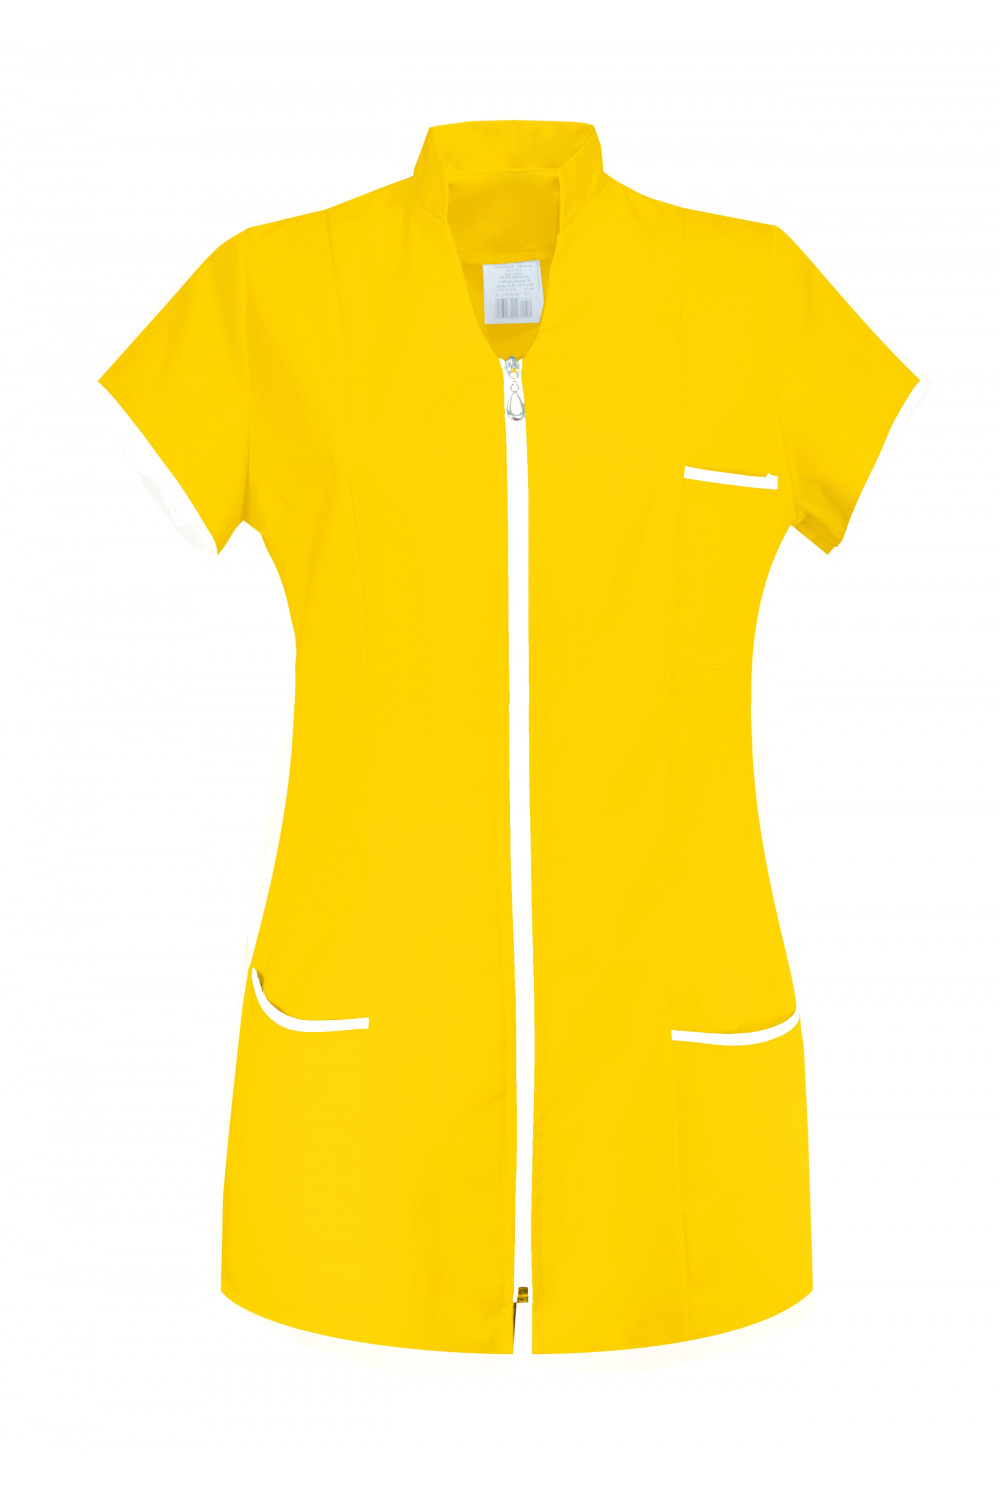 M-308 Żakiet damski na suwak medyczny kosmetyczny fartuch kolor żółty